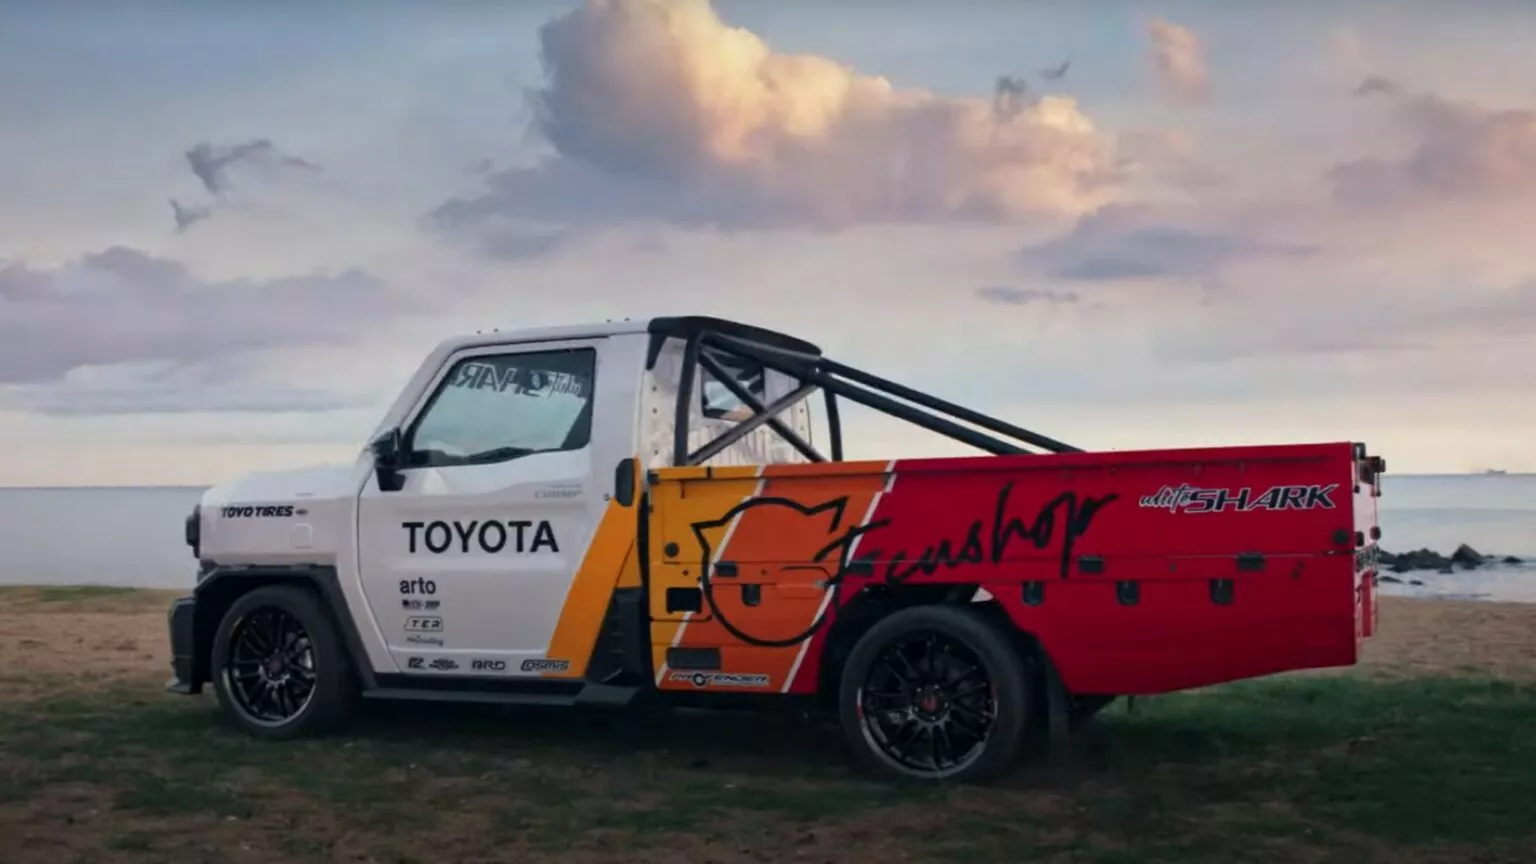 Moto Mobi | Dari Pikap Gaul Sampai Motorhome, Ini Modifikasi Toyota Hilux Champ Buat Inspirasi